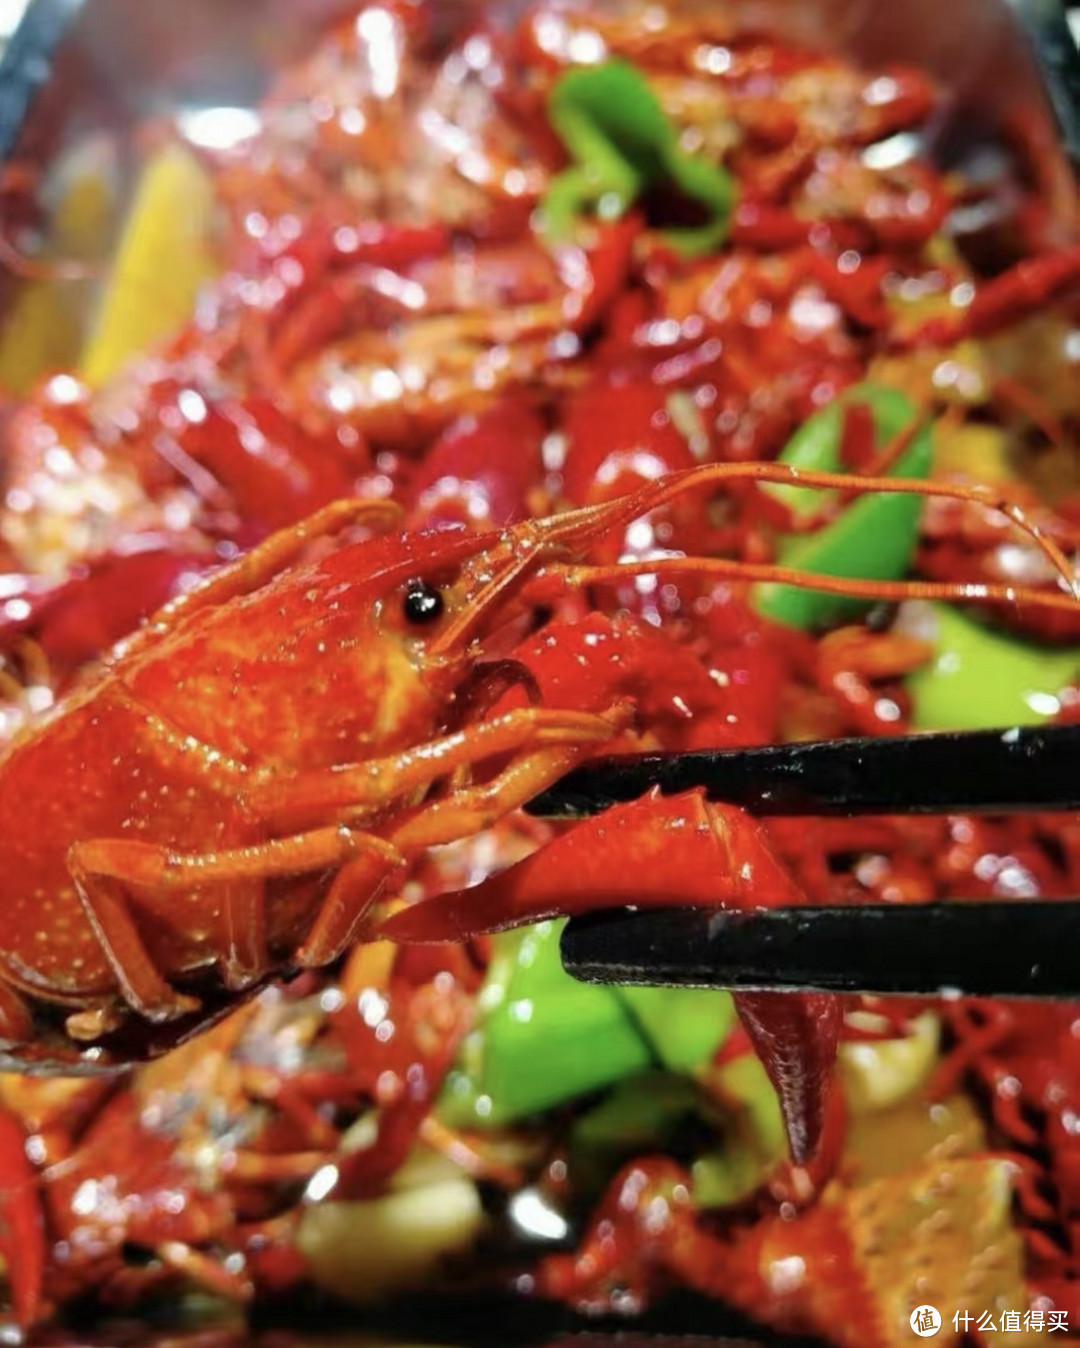 超级棒的龙虾盛宴——盱眙龙虾！😍